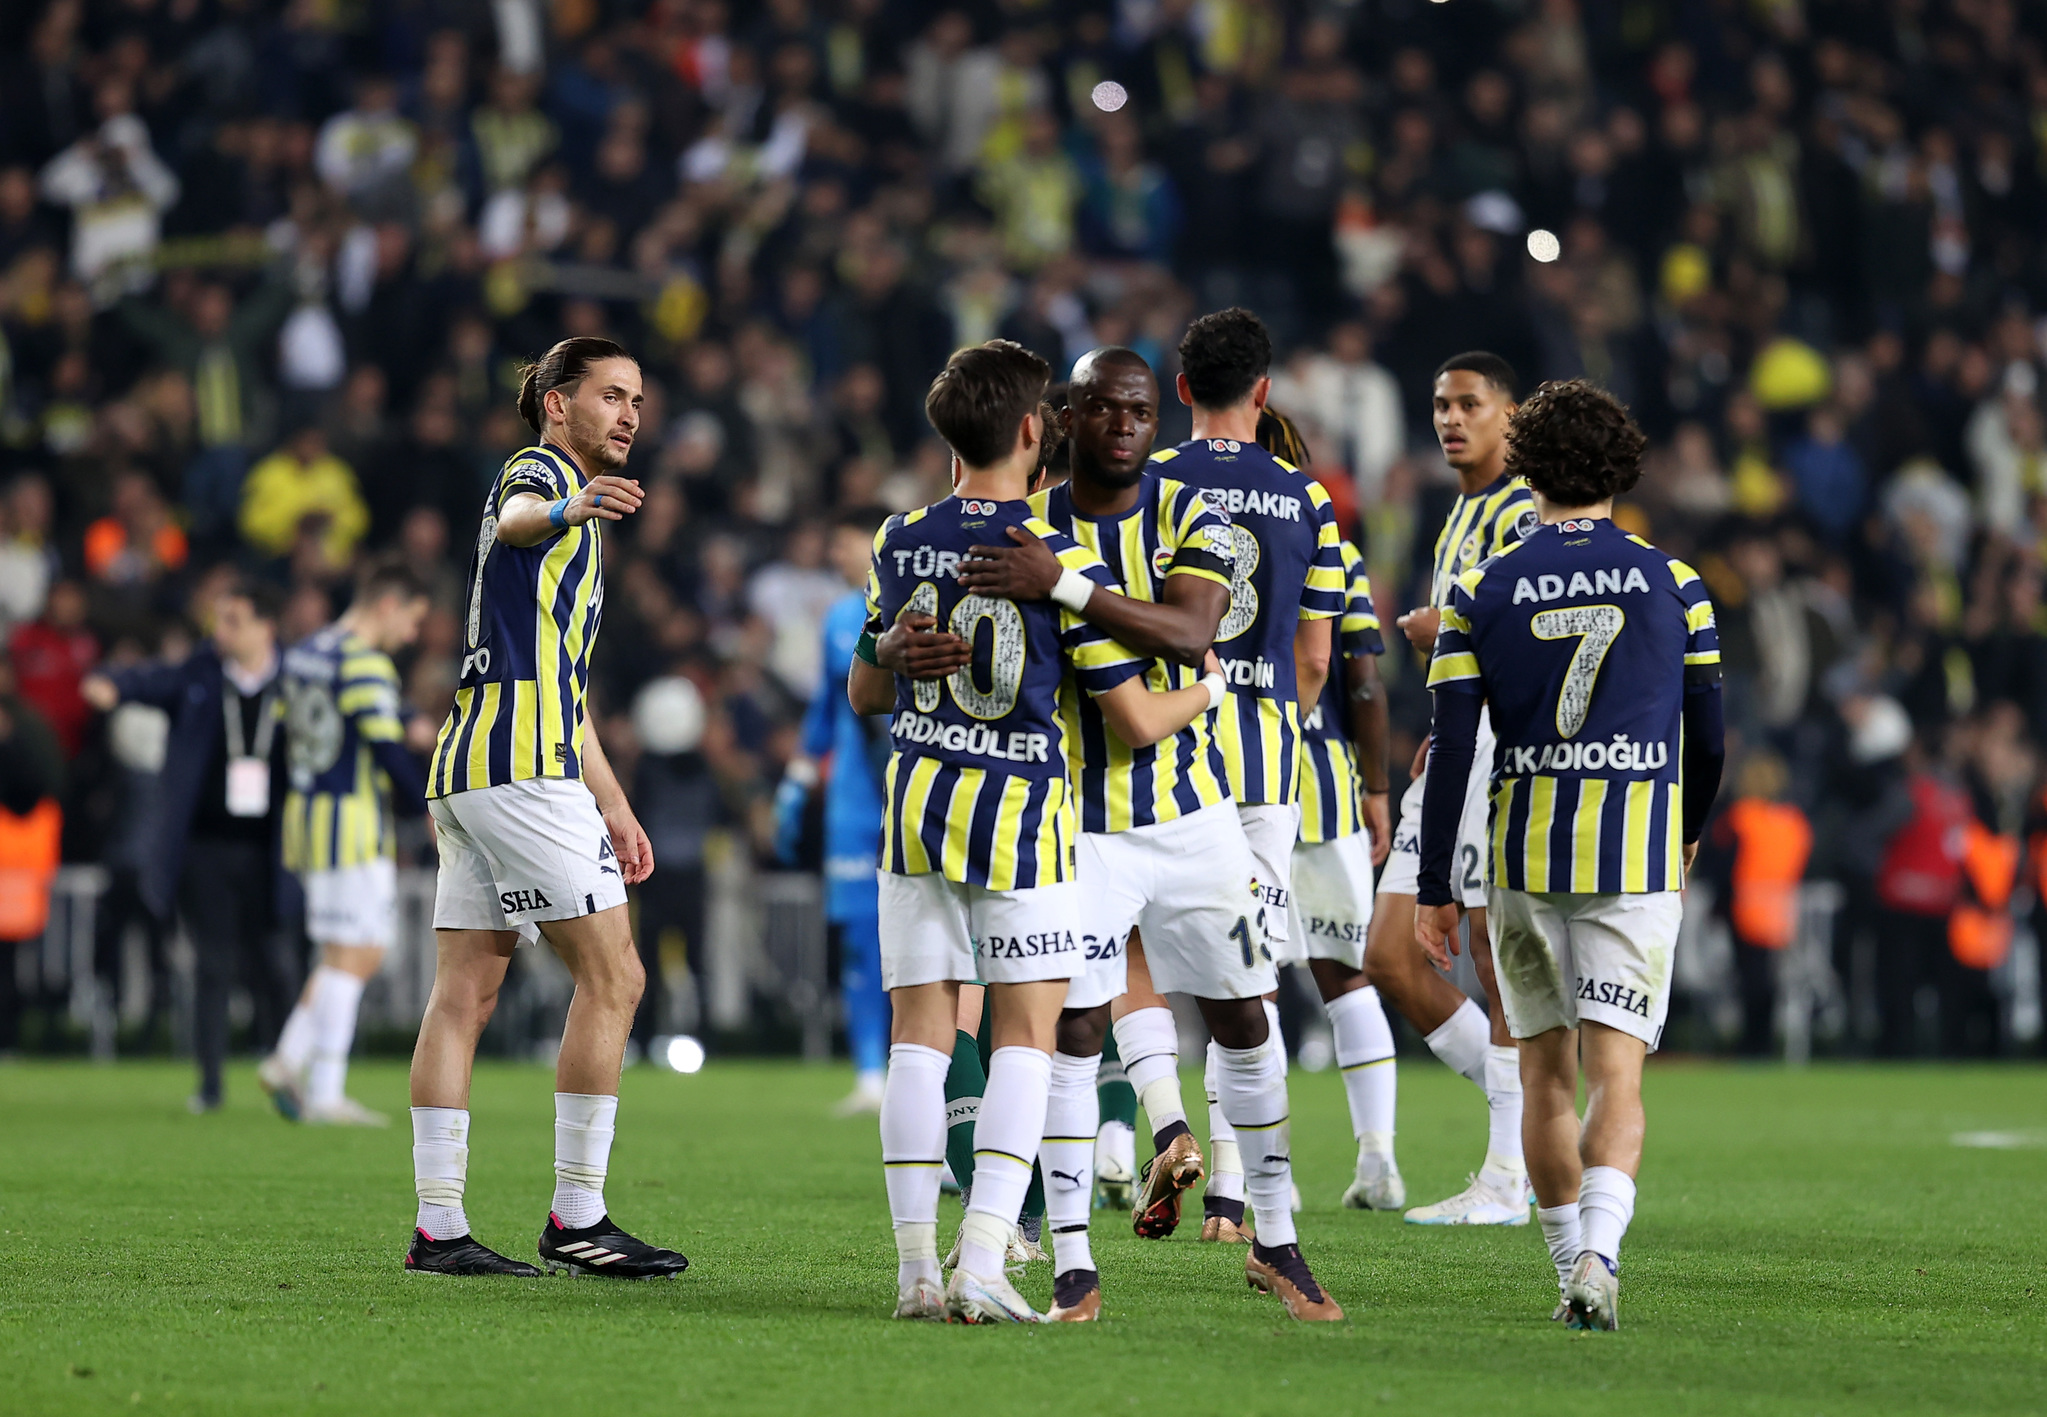 Ante Rebic Fenerbahçe’ye gidecek mi? Transfer açıklandı!